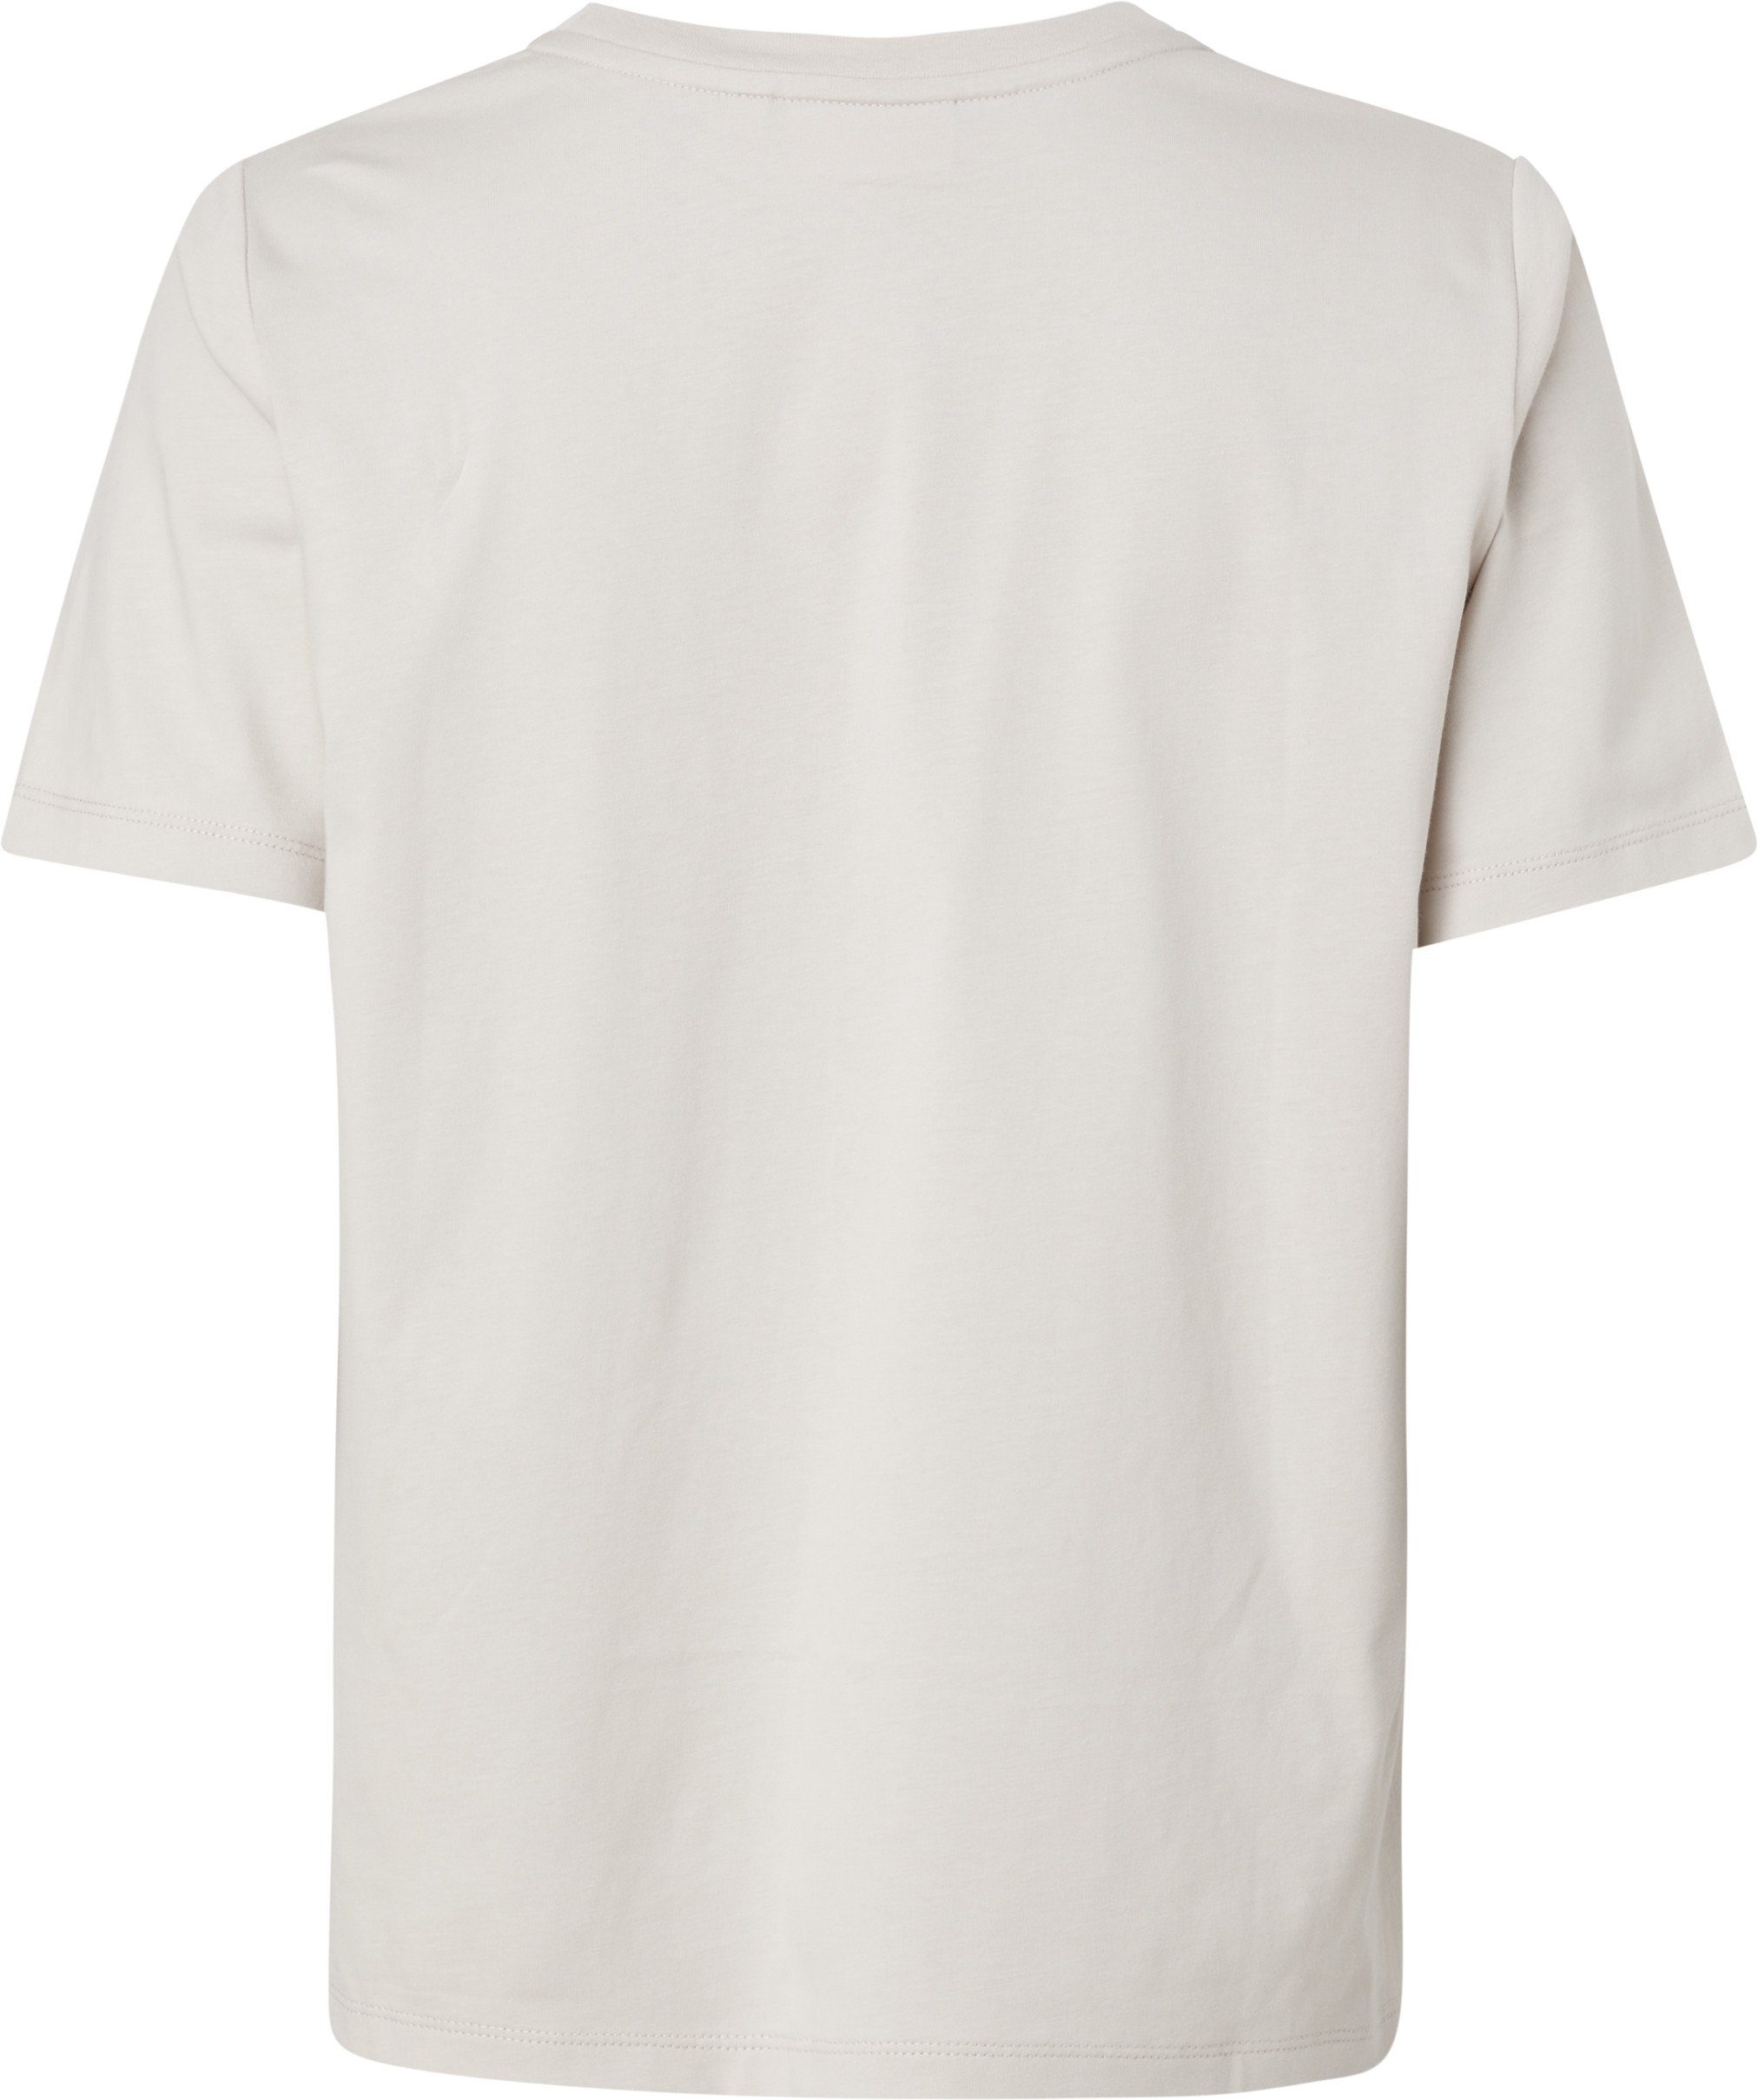 Gray Calvin MICRO reiner T-SHIRT Silver LOGO Baumwolle T-Shirt aus Klein